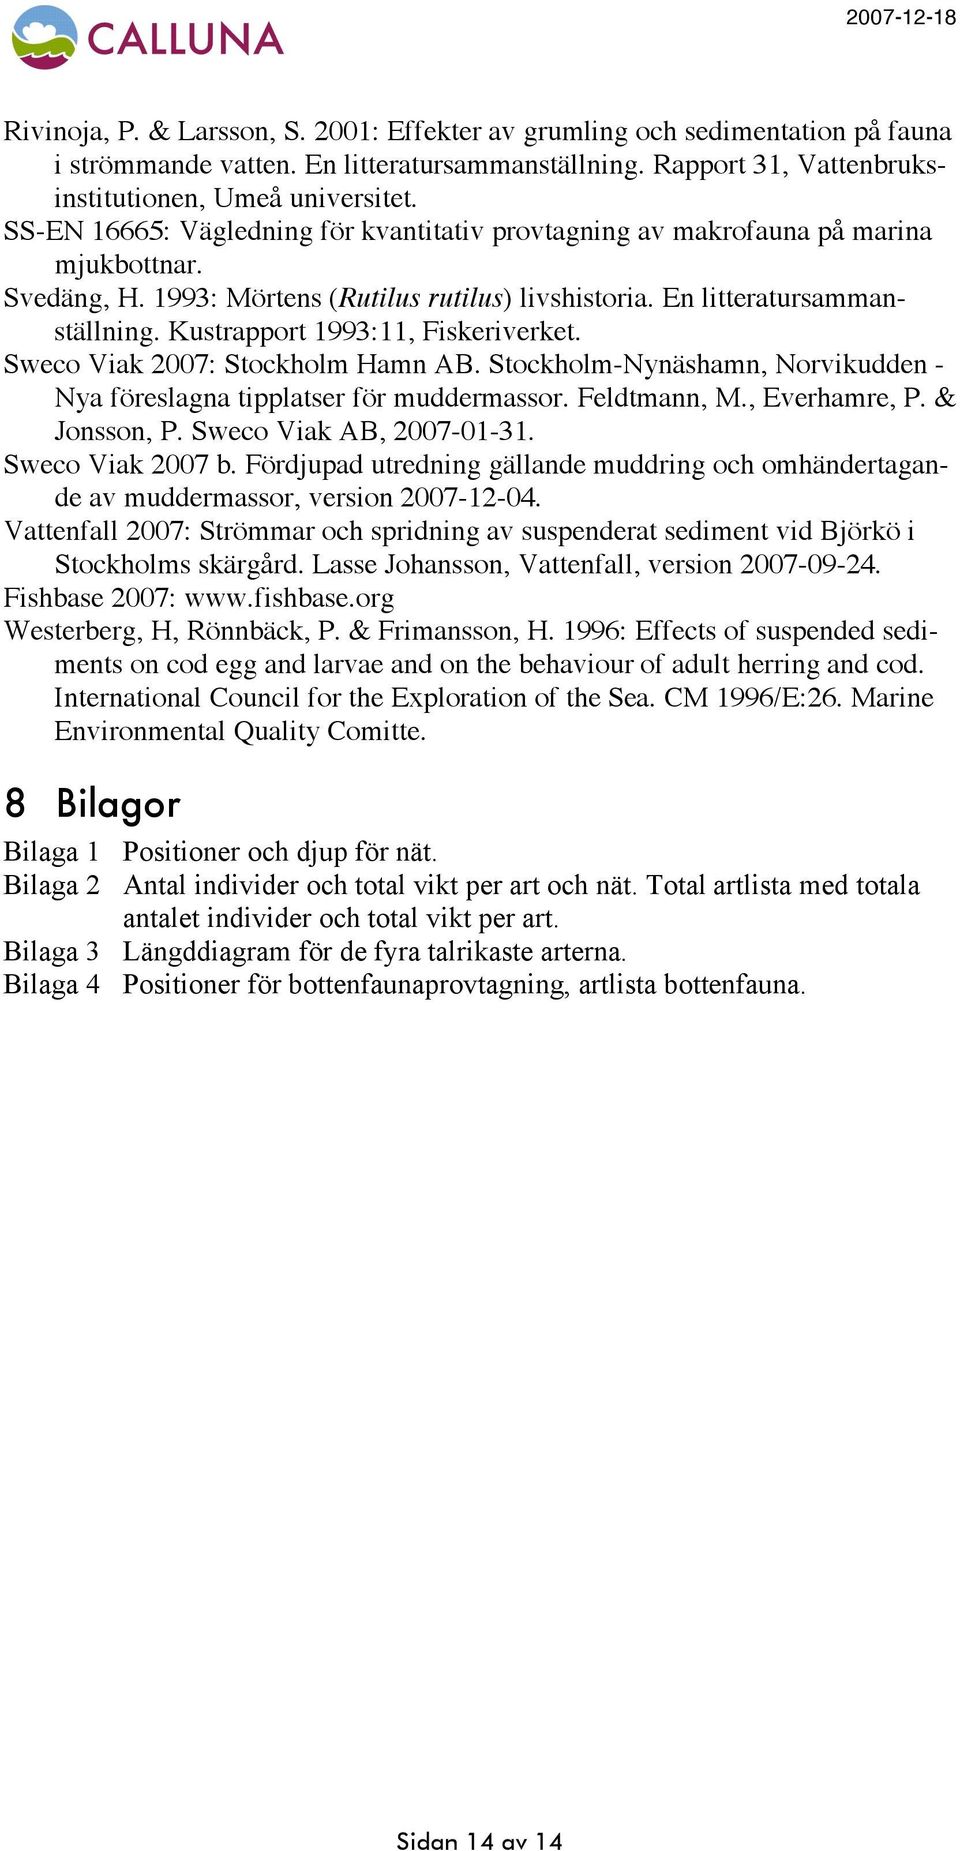 Kustrapport 1993:11, Fiskeriverket. Sweco Viak 2007: Stockholm Hamn AB. Stockholm-Nynäshamn, Norvikudden - Nya föreslagna tipplatser för muddermassor. Feldtmann, M., Everhamre, P. & Jonsson, P.